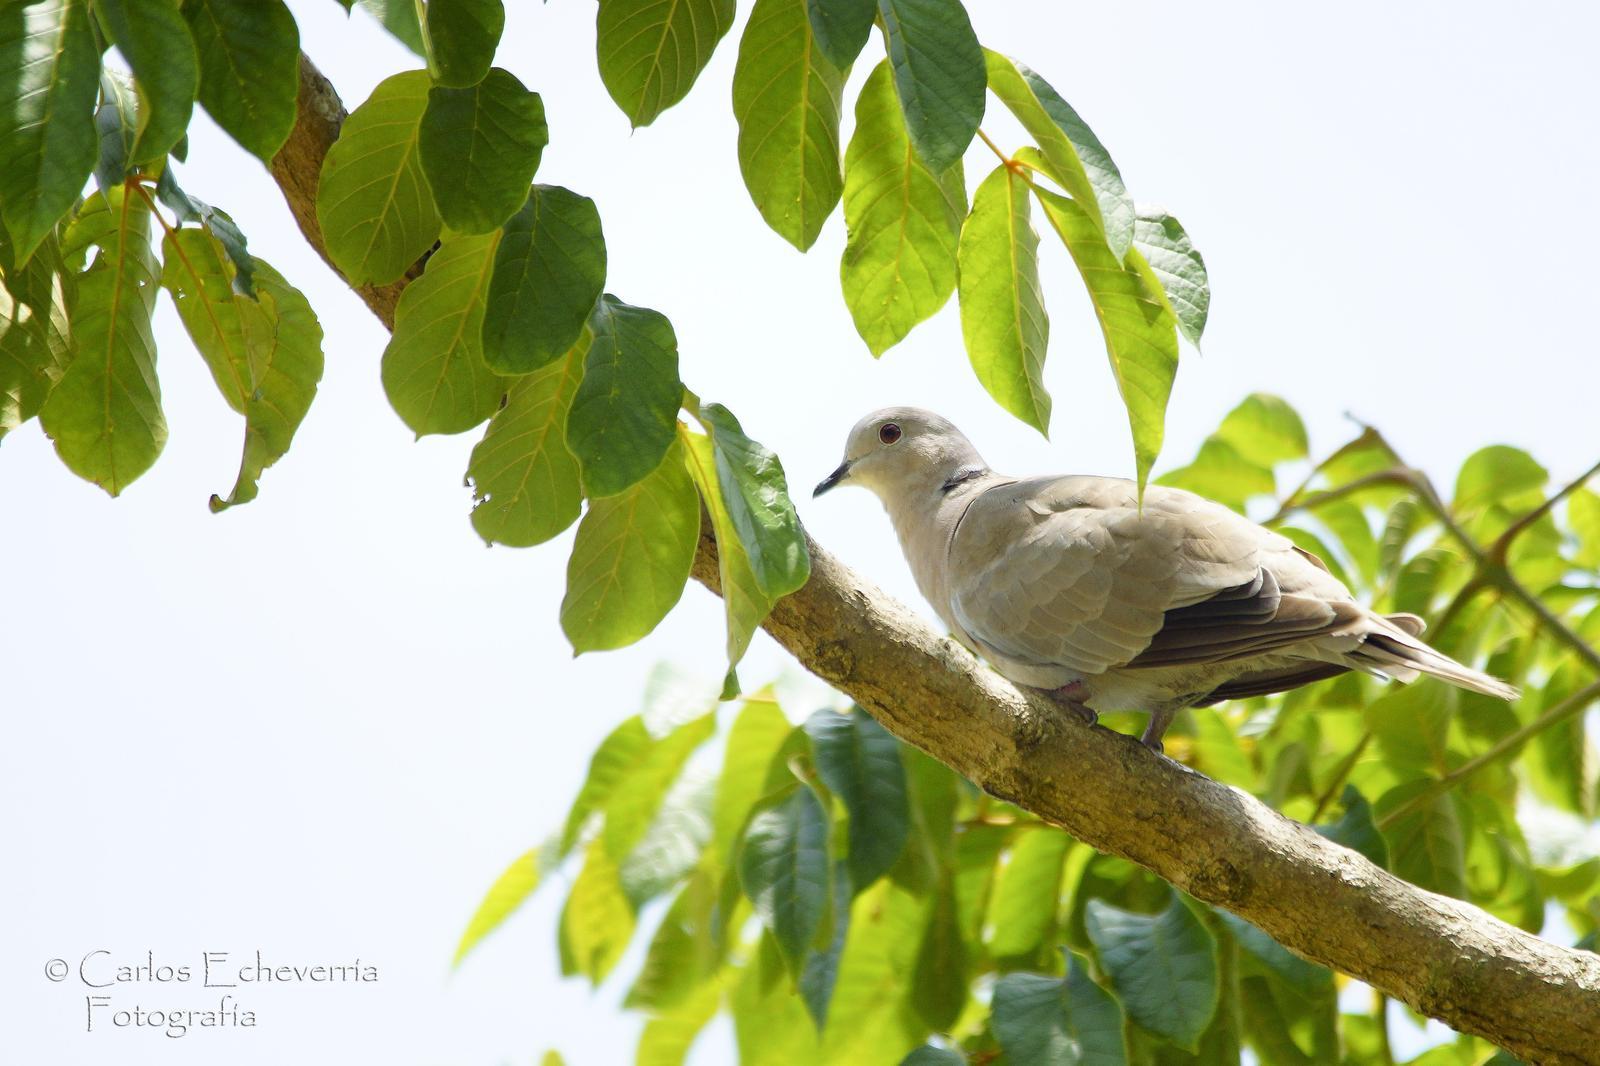 Eurasian Collared-Dove Photo by Carlos Echeverría